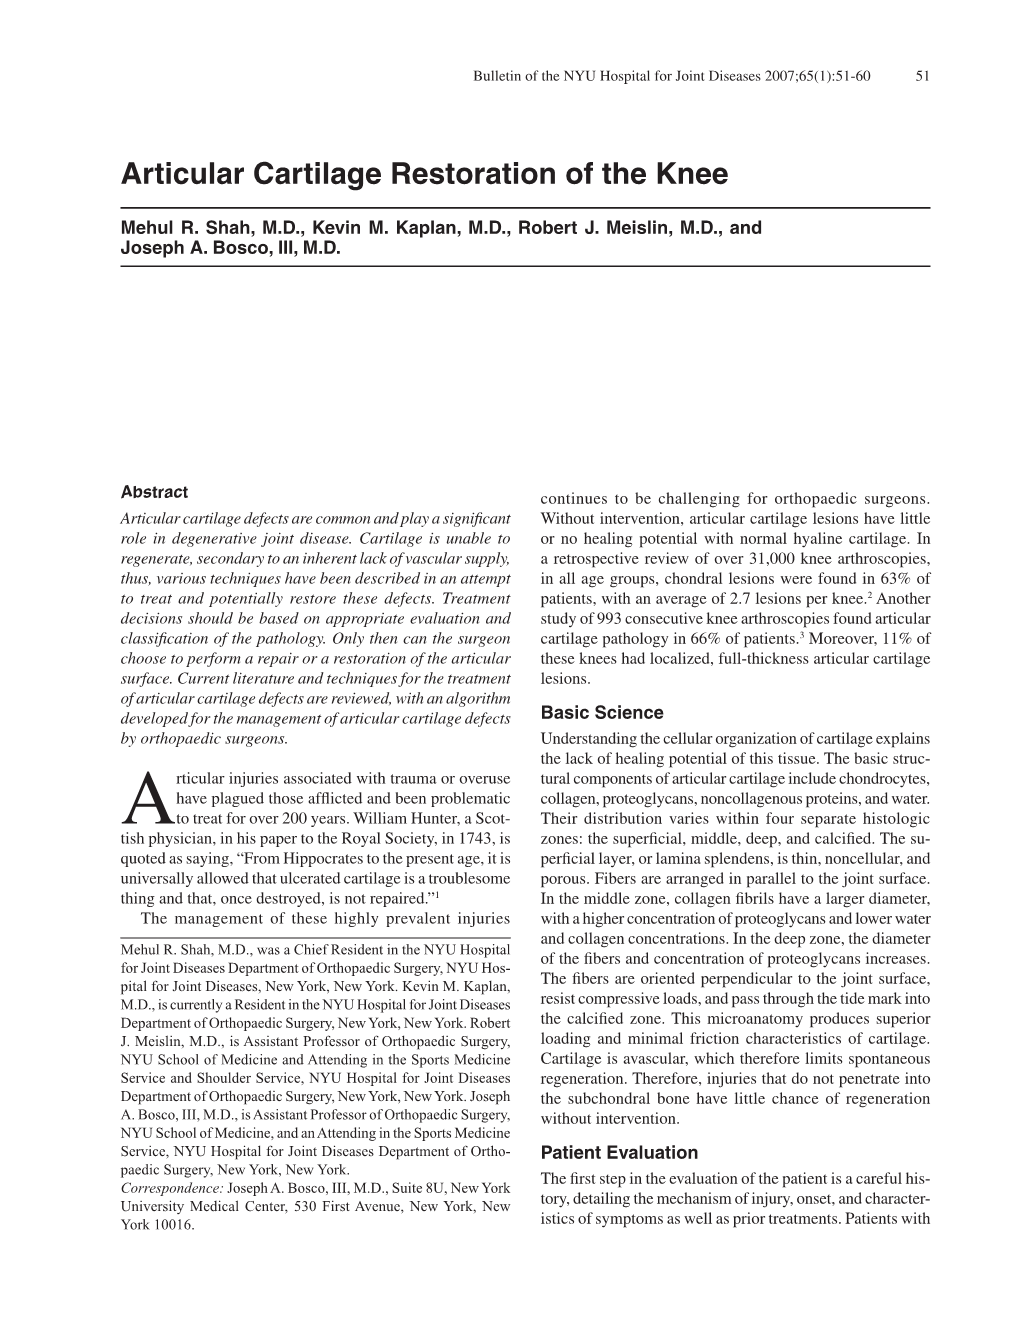 Articular Cartilage Restoration of the Knee